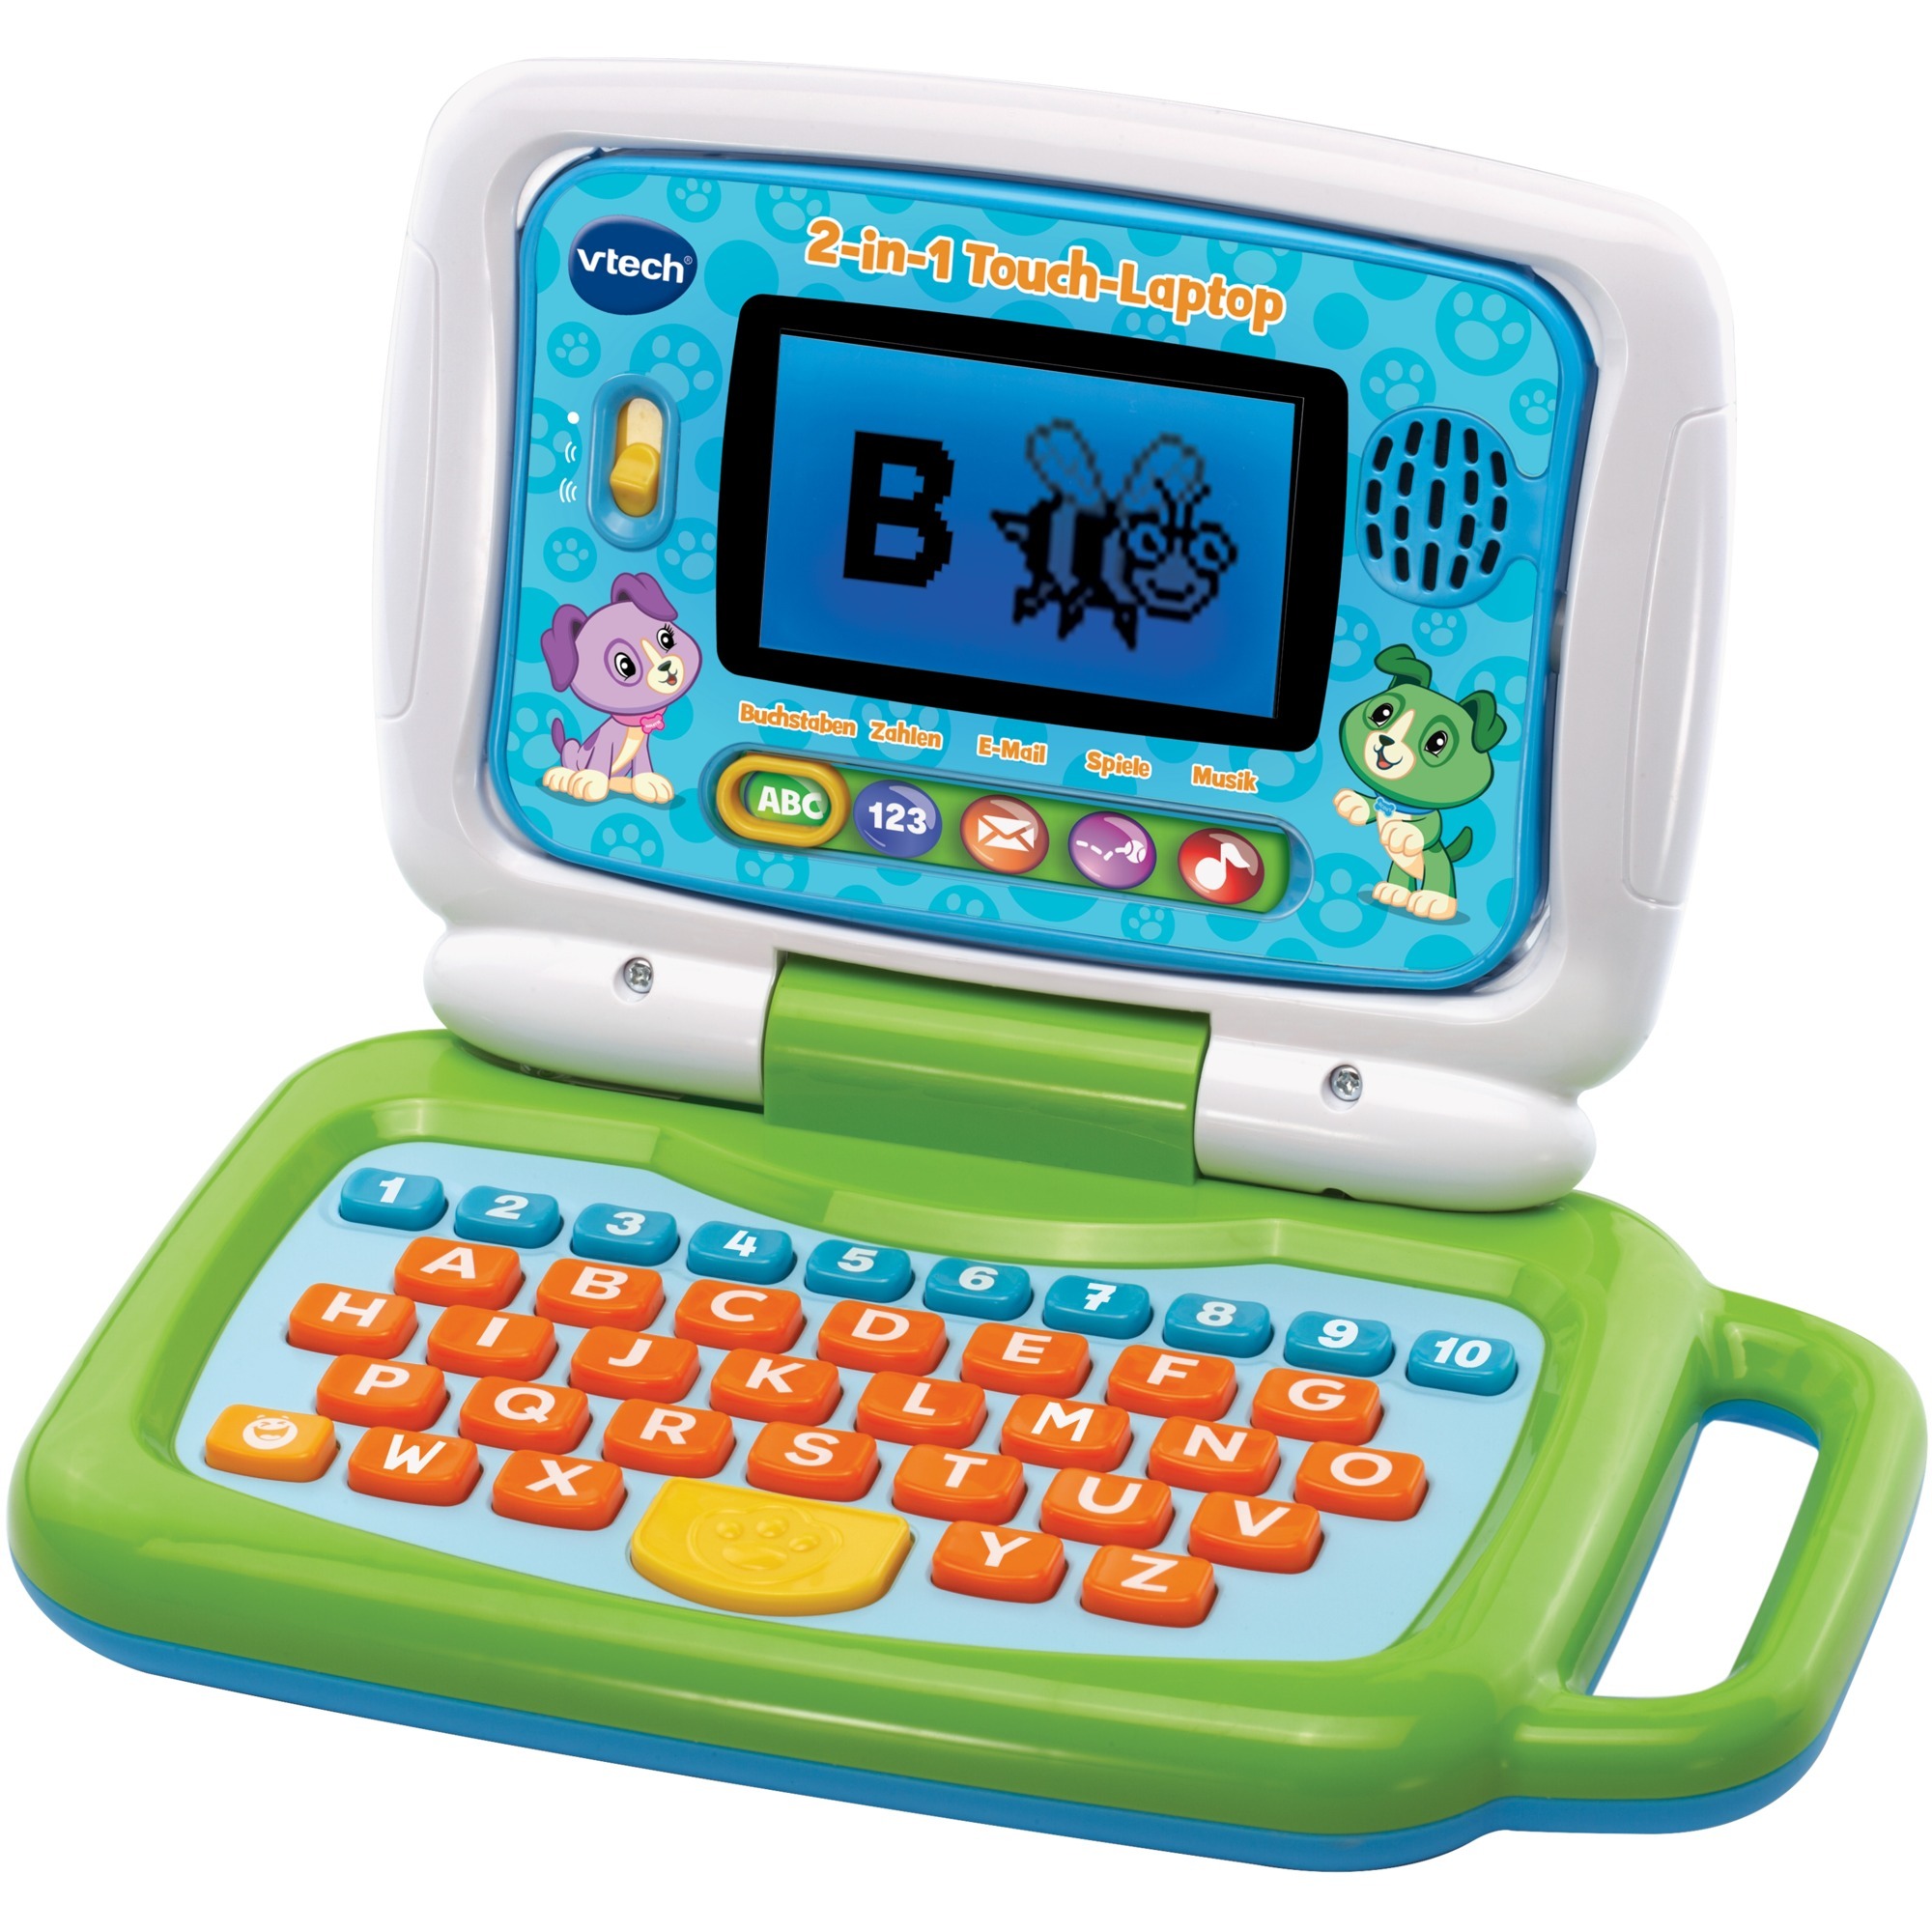 Image of Alternate - 2-in-1 Touch-Laptop, Lerncomputer online einkaufen bei Alternate